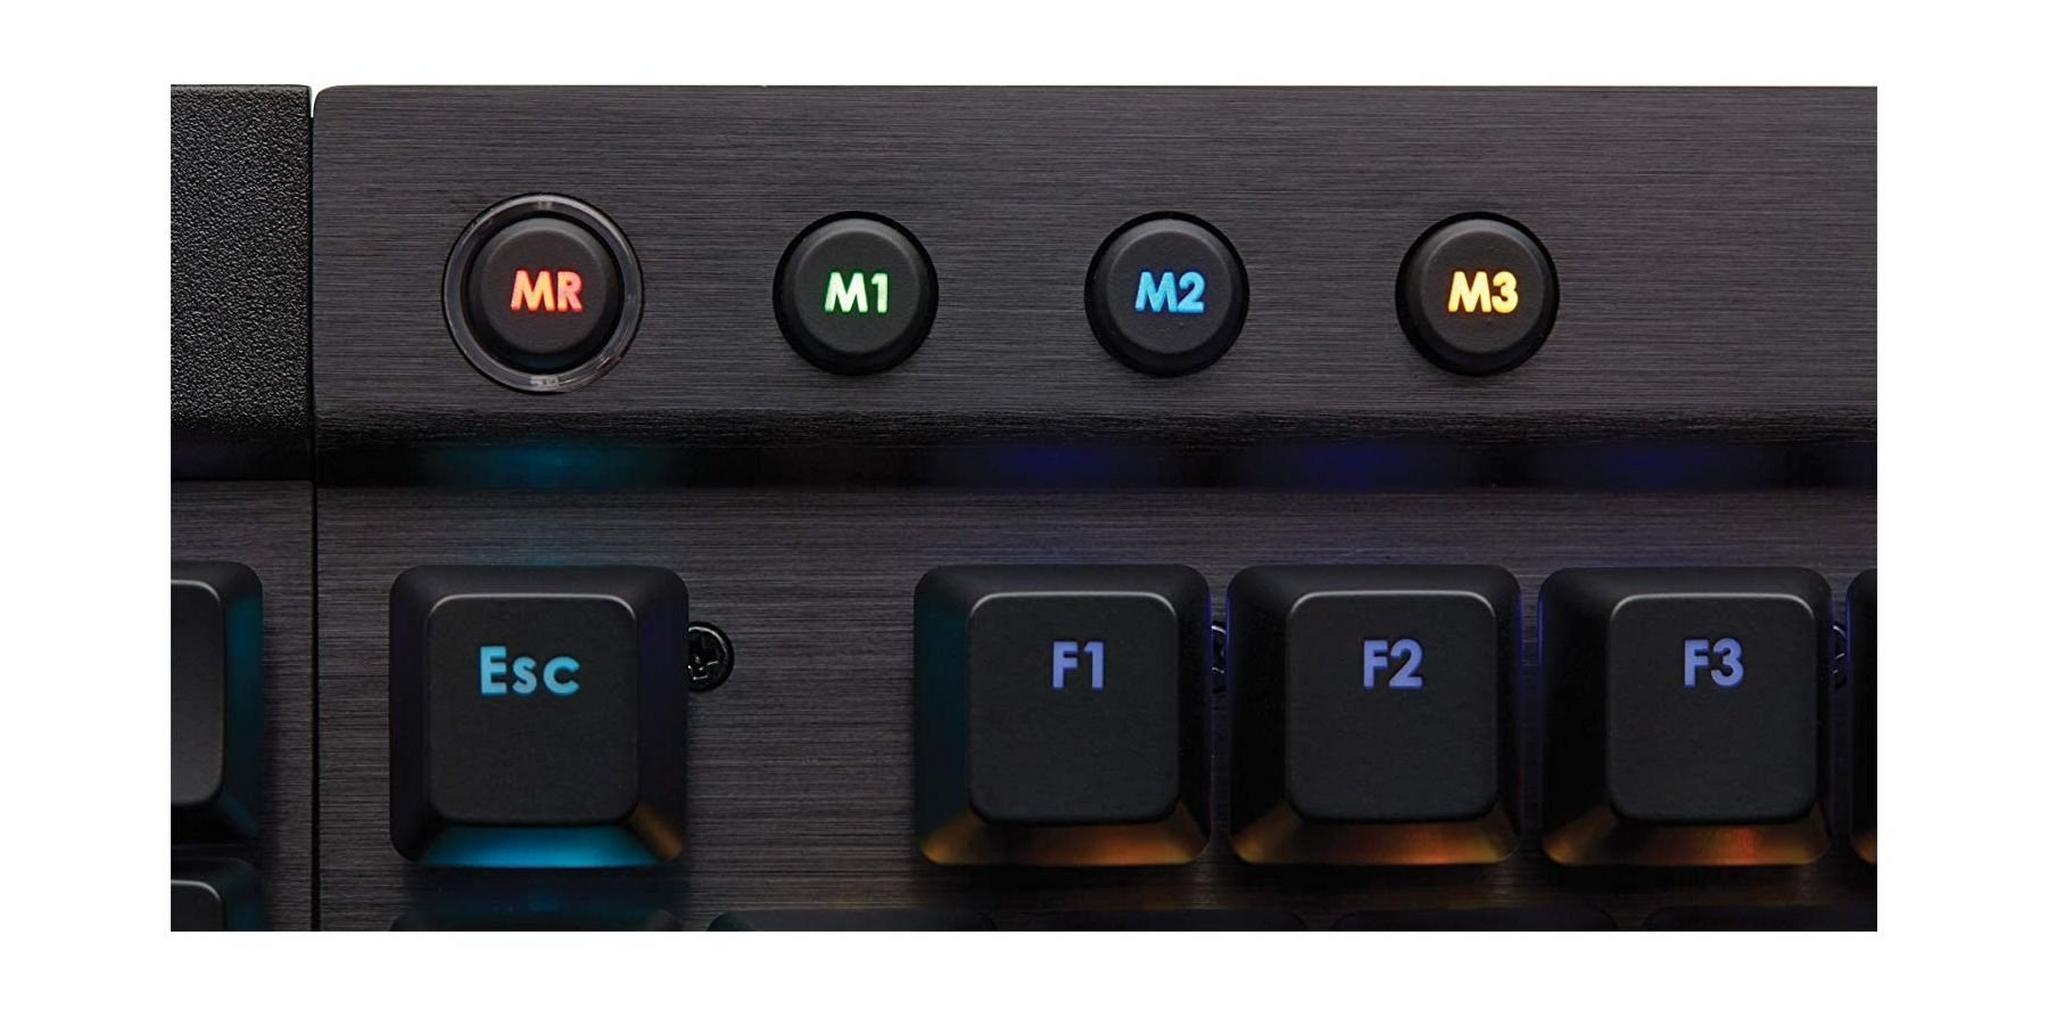 Corsair Gaming K95 RGB Mechanical Gaming Keyboard (CH-9127014-NA)